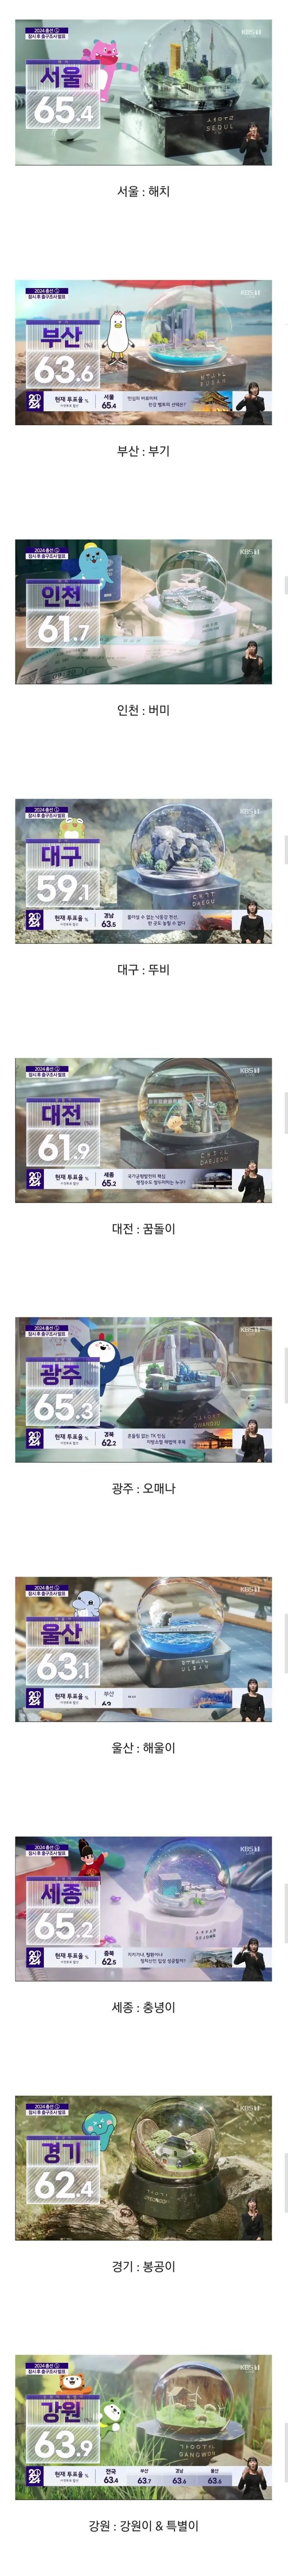 KBS 개표방송의 각 지역별 마스코트와 미니어처.jpg | mbong.kr 엠봉